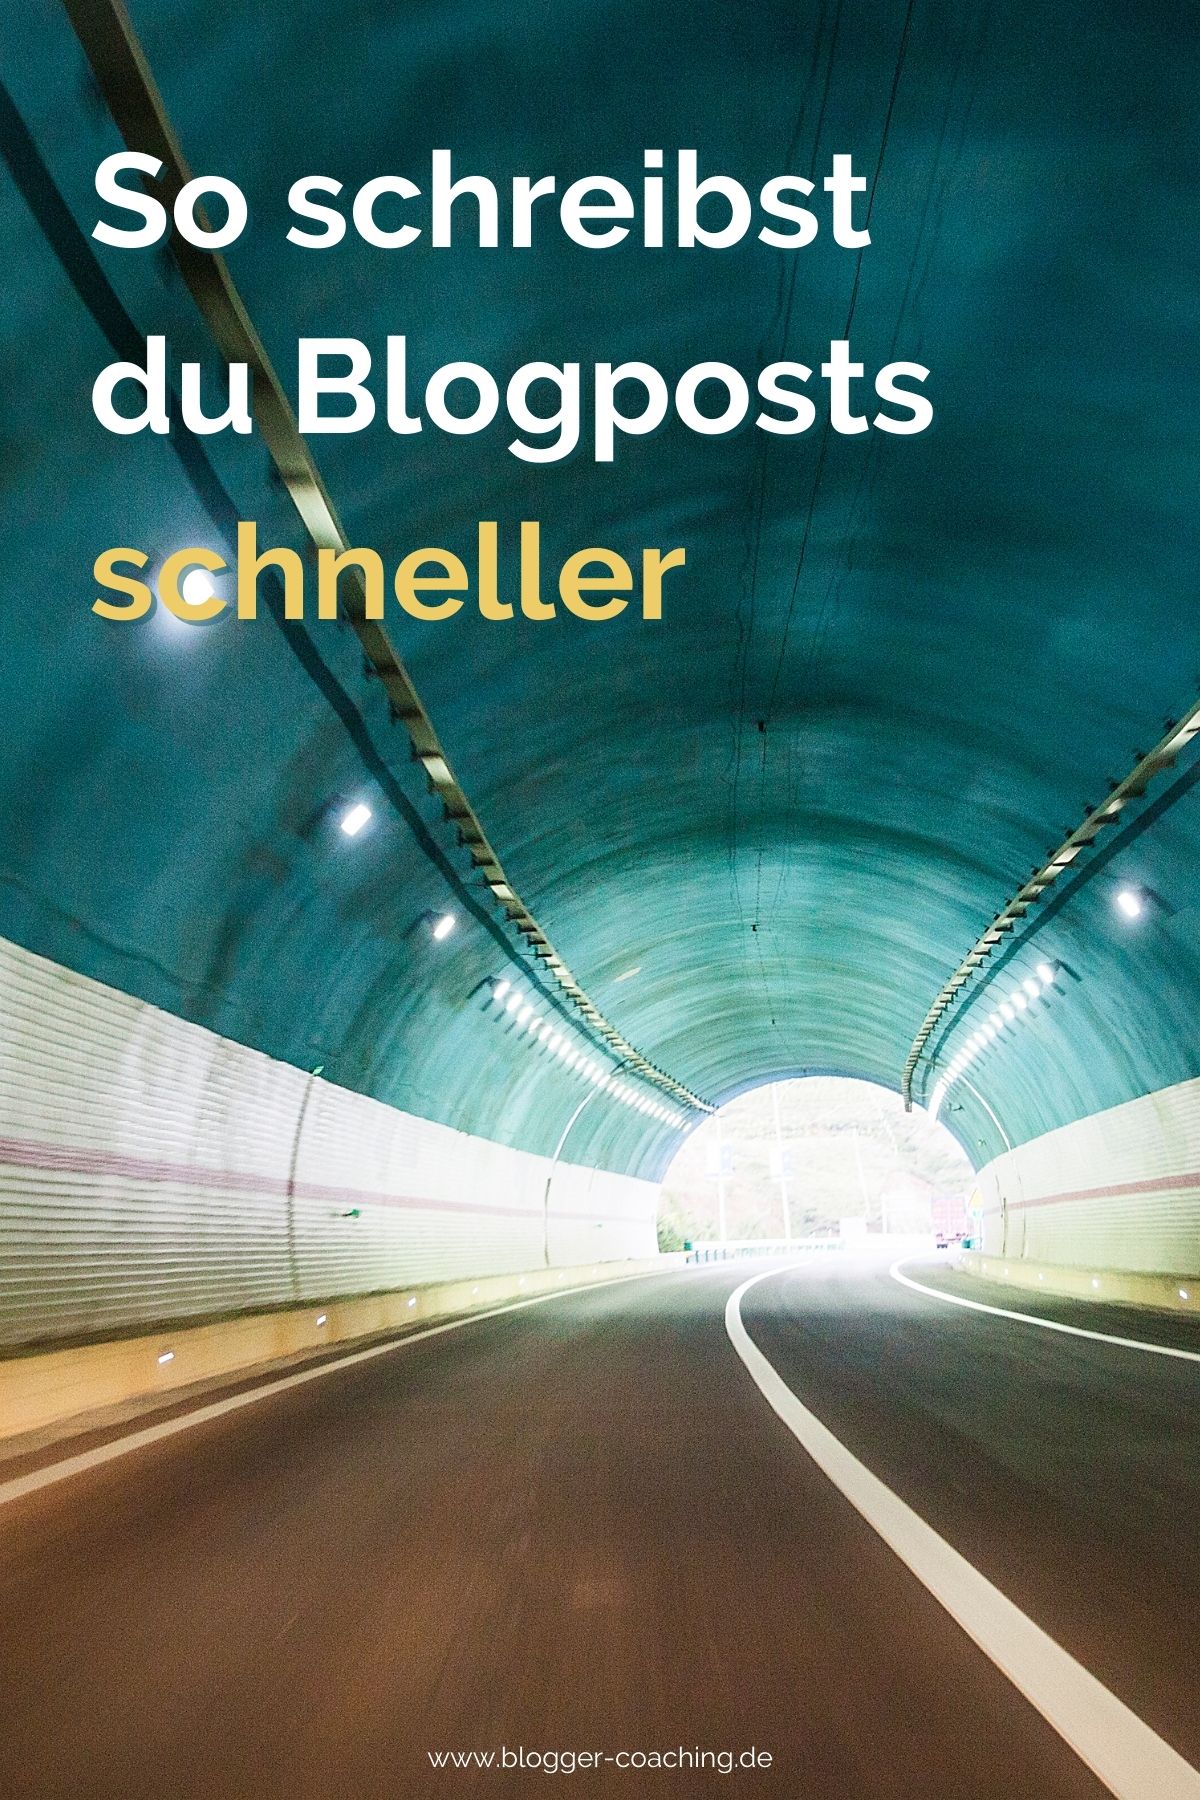 Effizienter bloggen: 7 geniale Zeitspartipps für Blogger | Business Blogger Coaching Filiz Odenthal